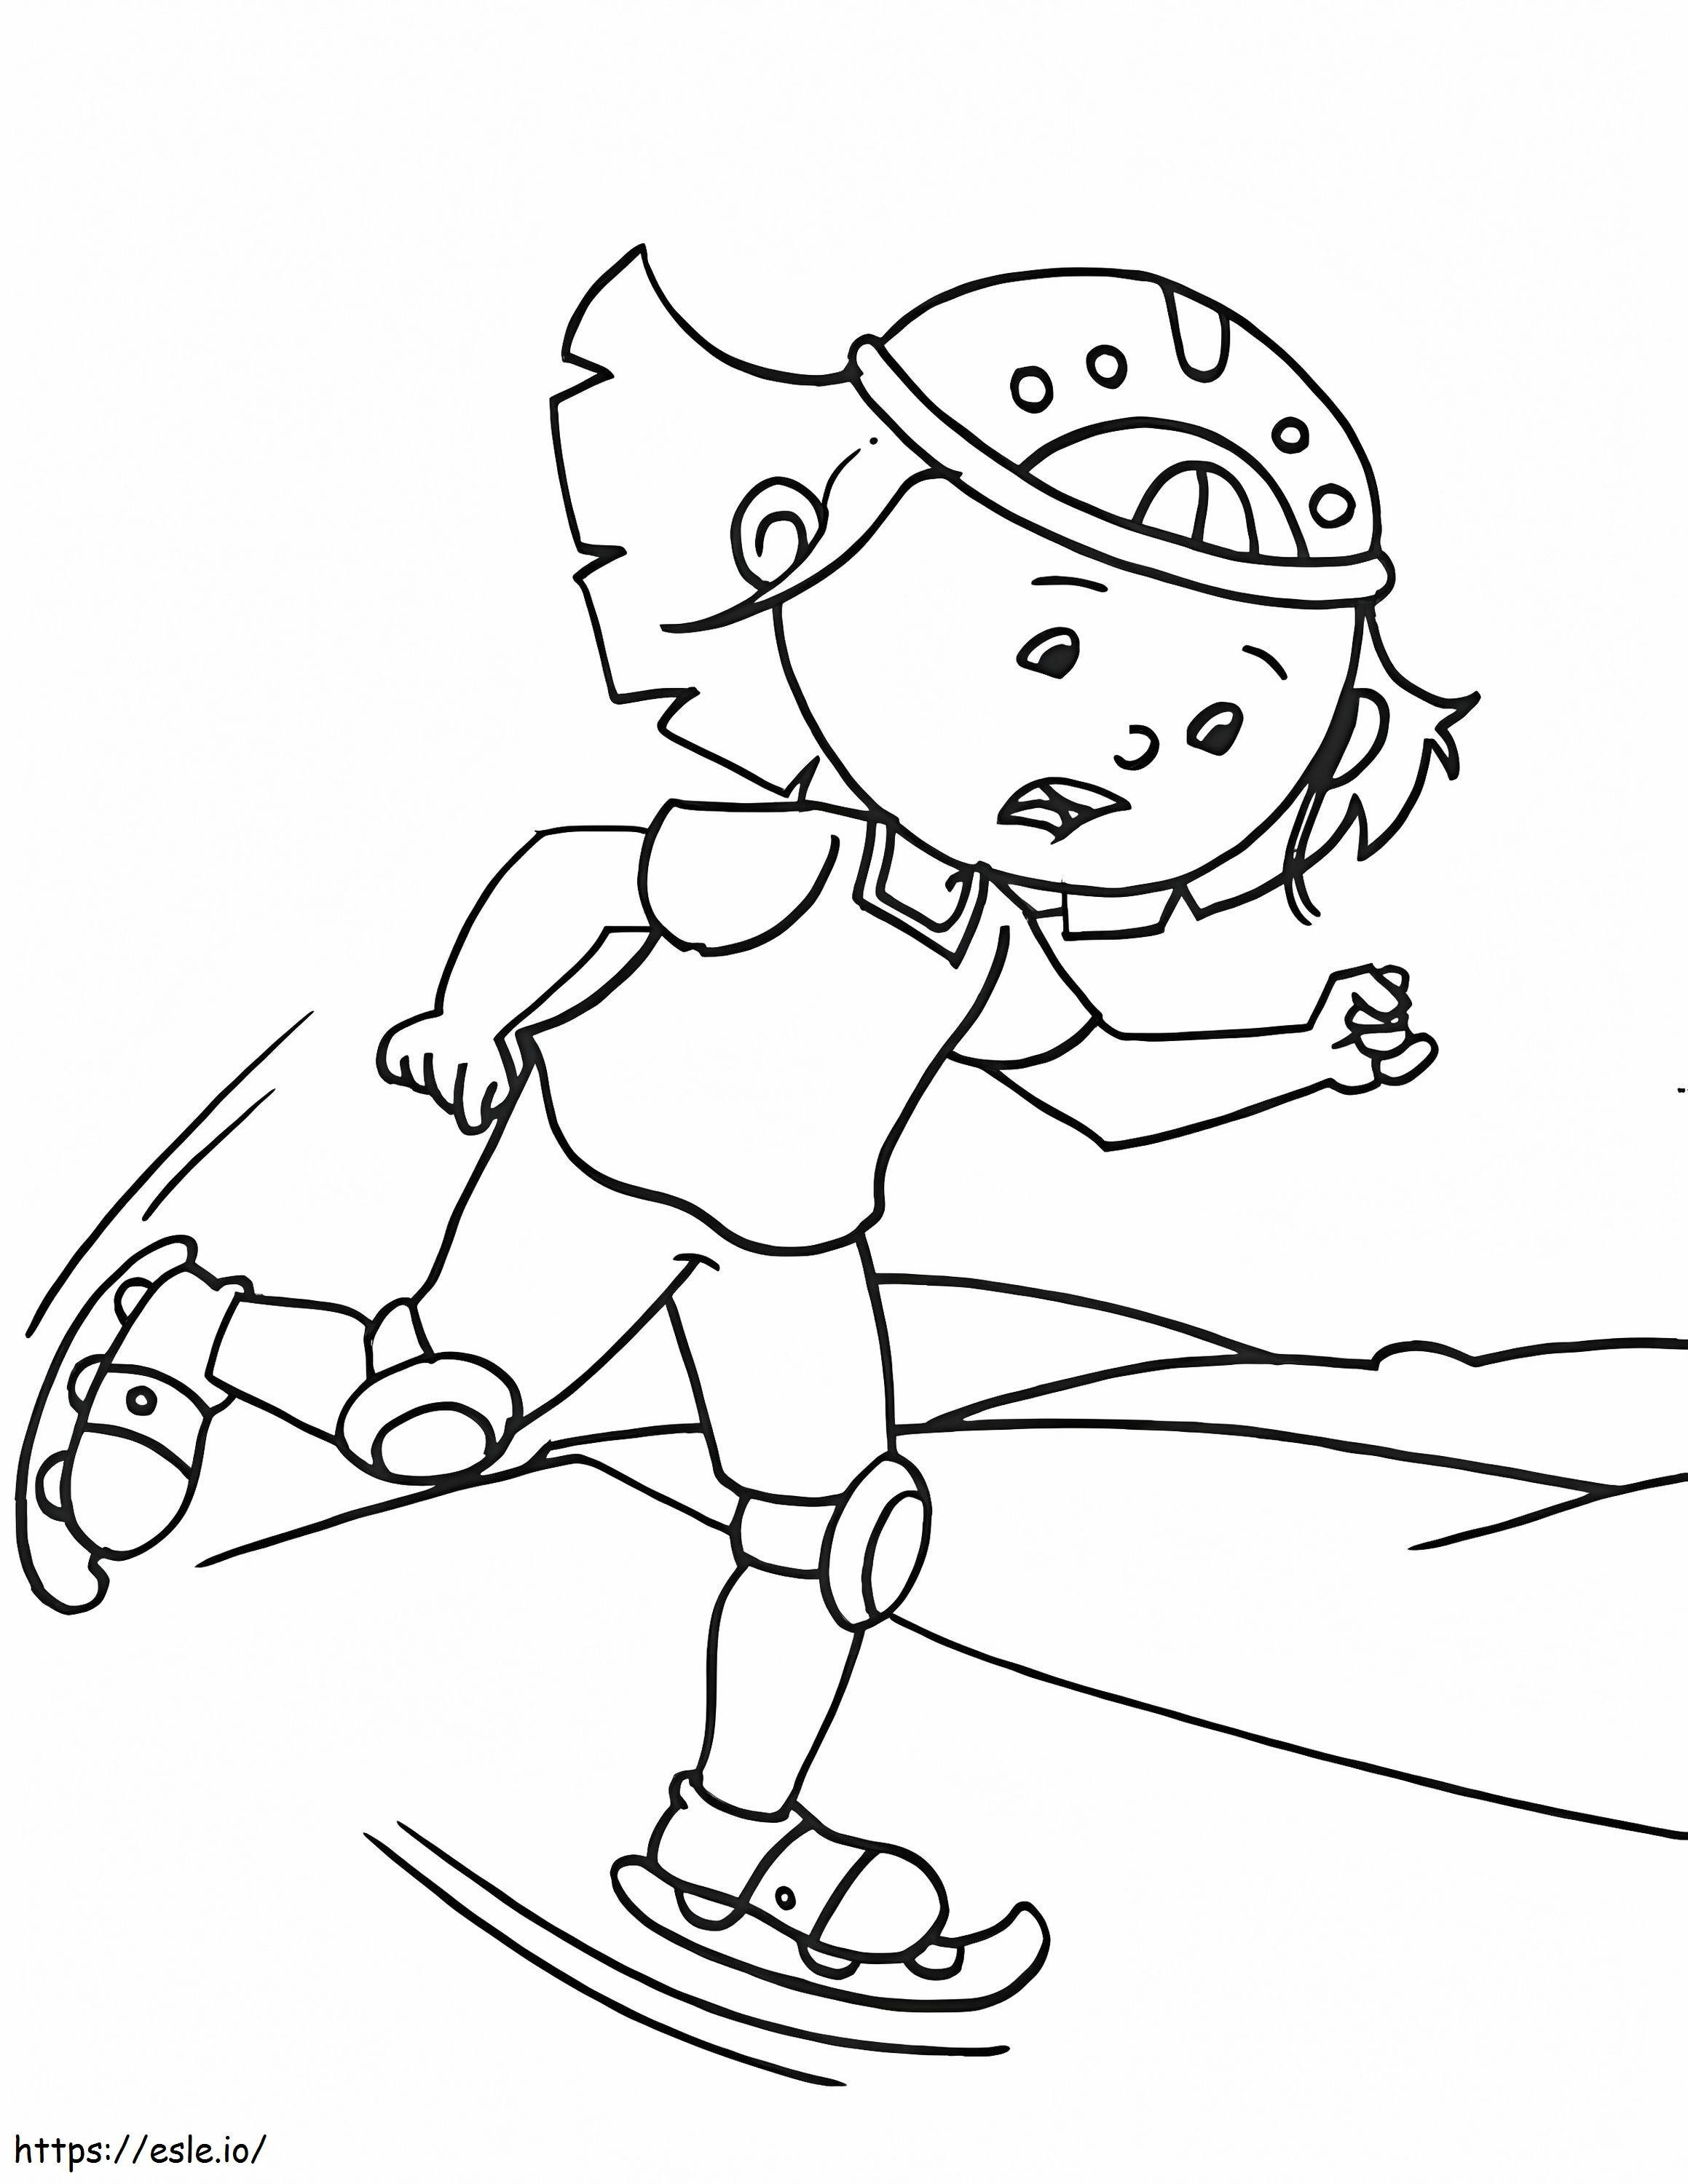 Fata înfricoșată joacă patinaj de colorat